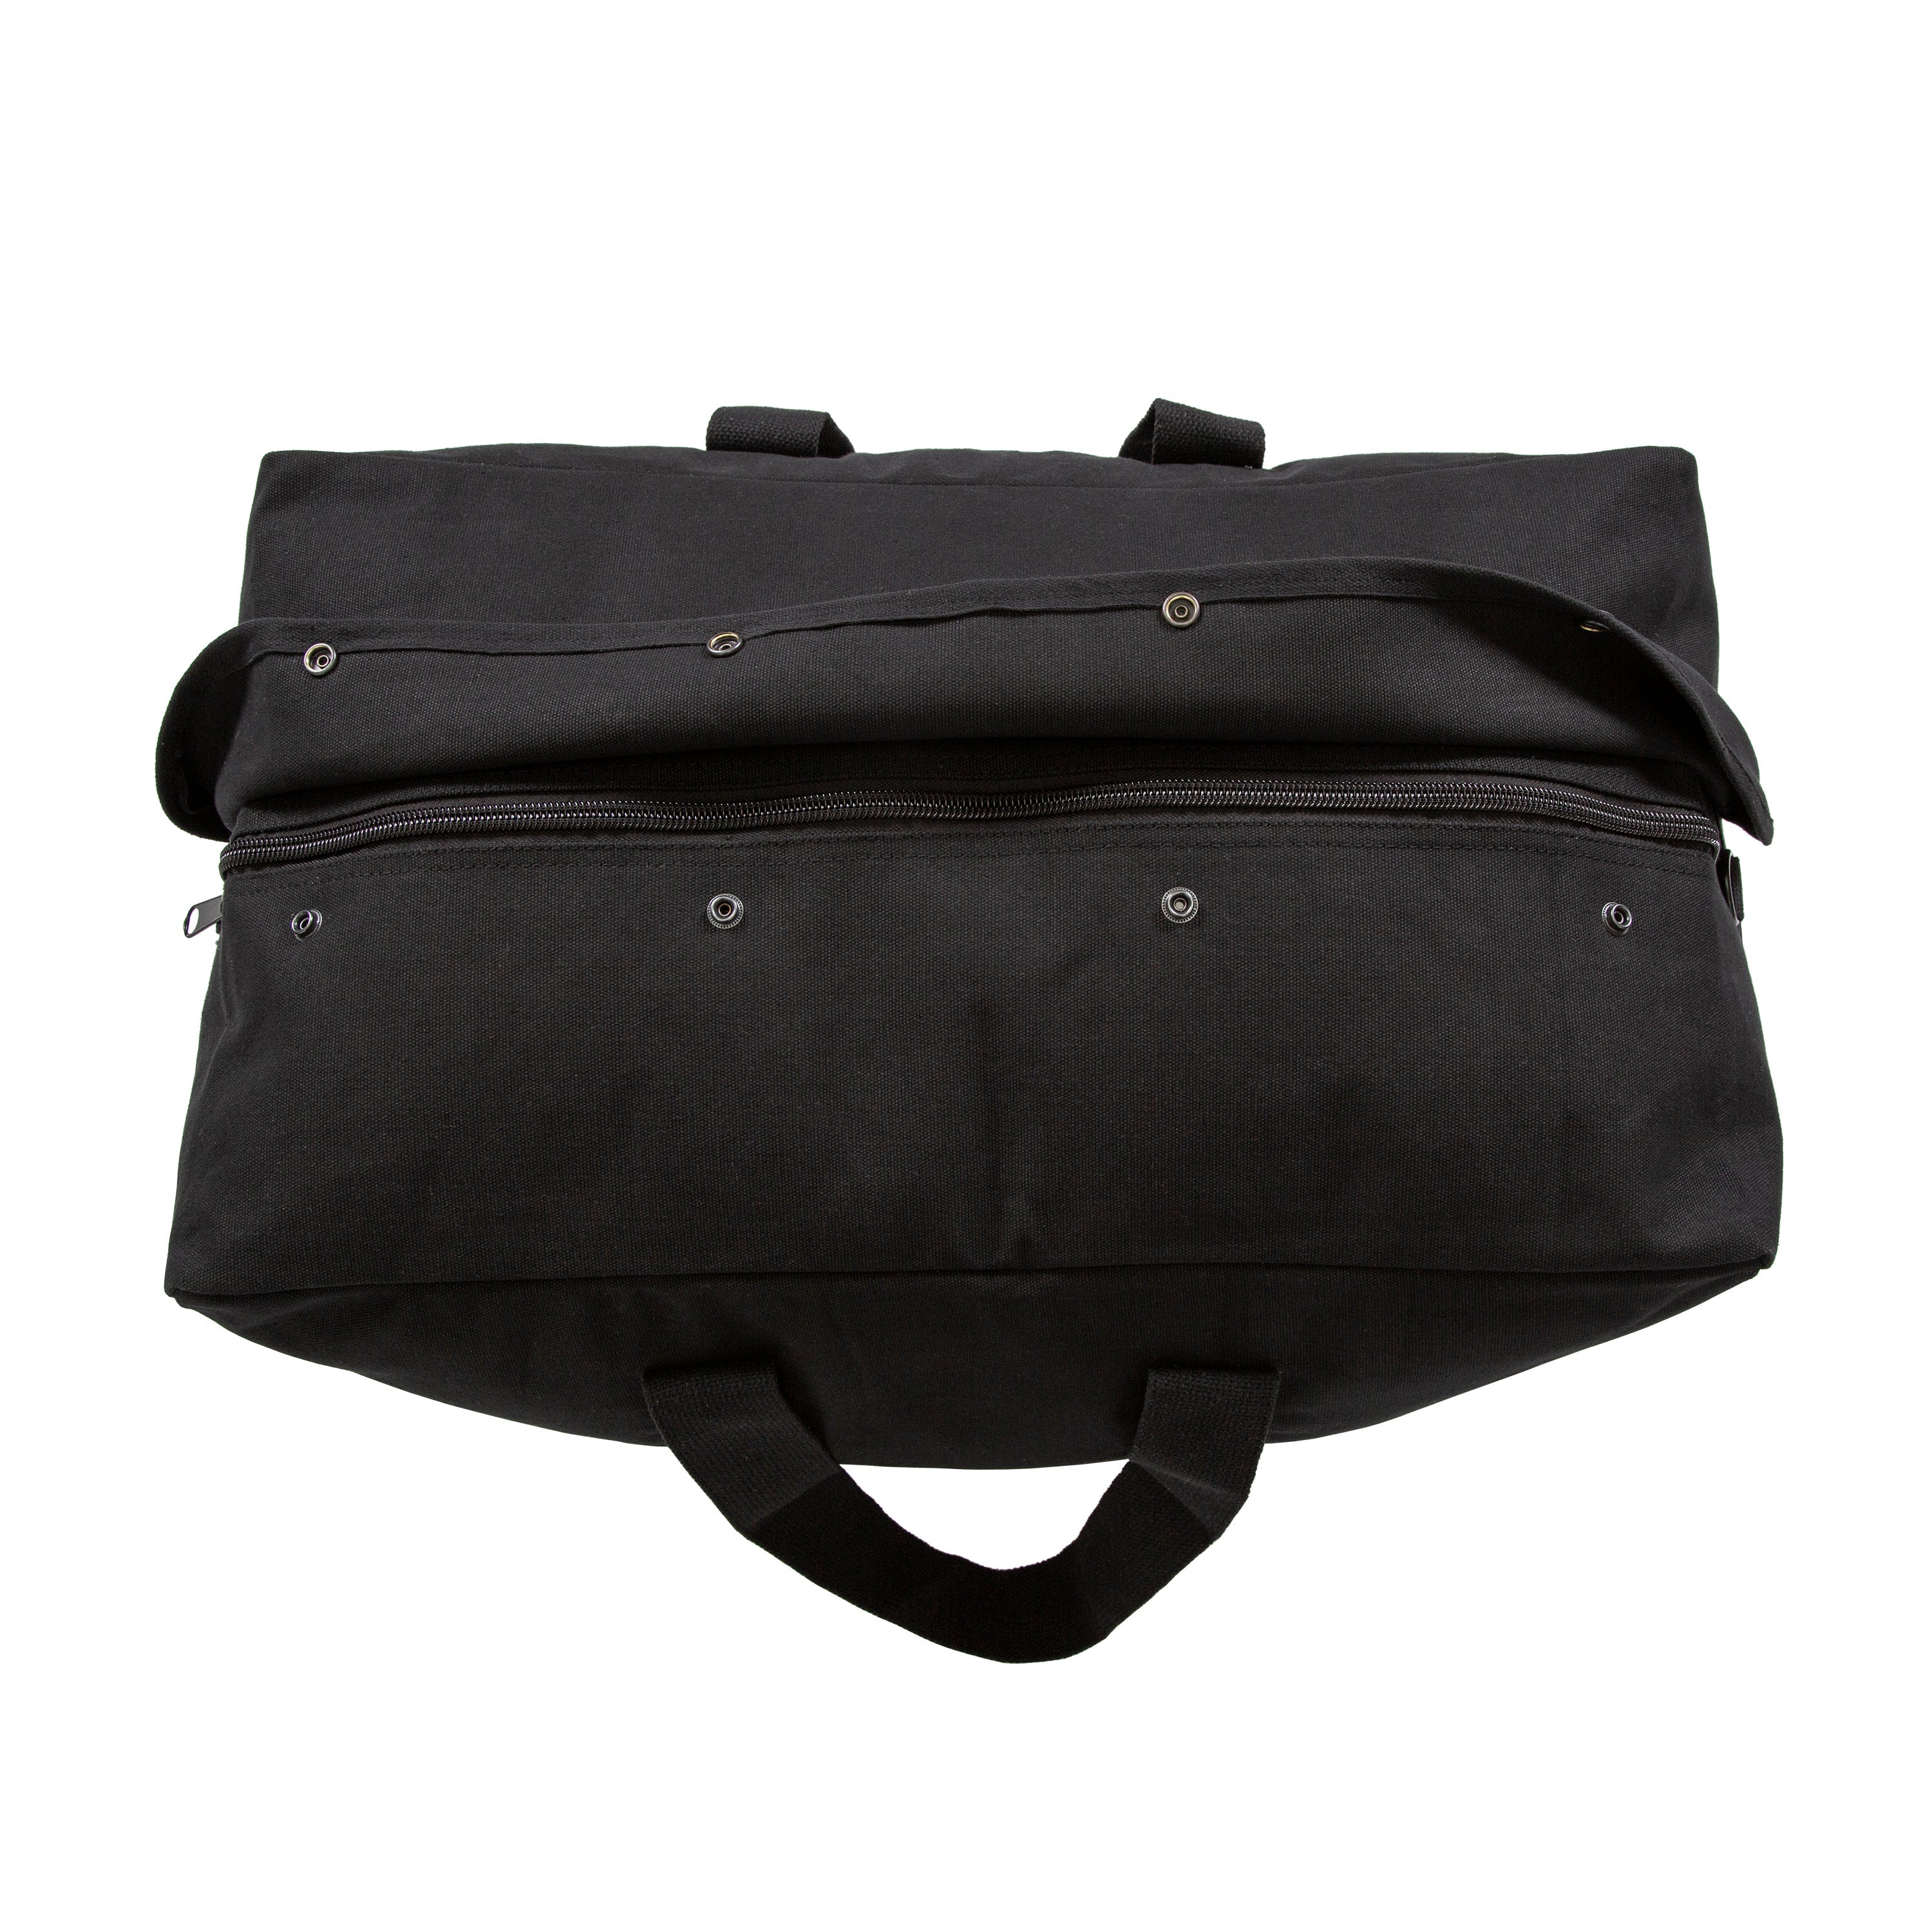 Parachute/Cargo Bag - Black